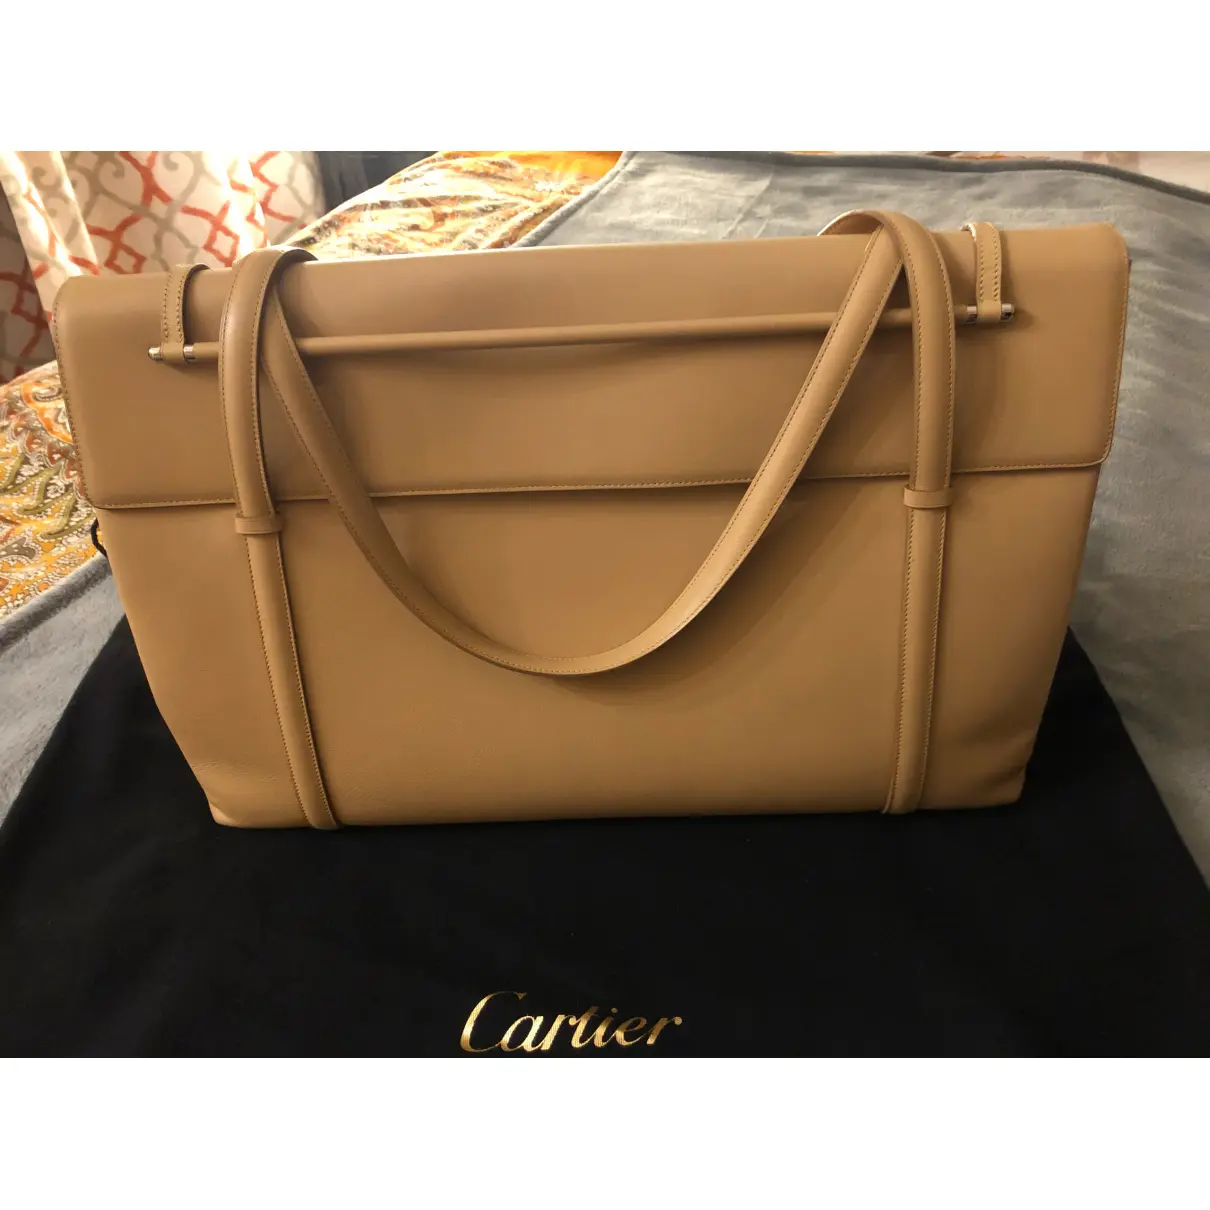 Buy Cartier Cabochon leather handbag online